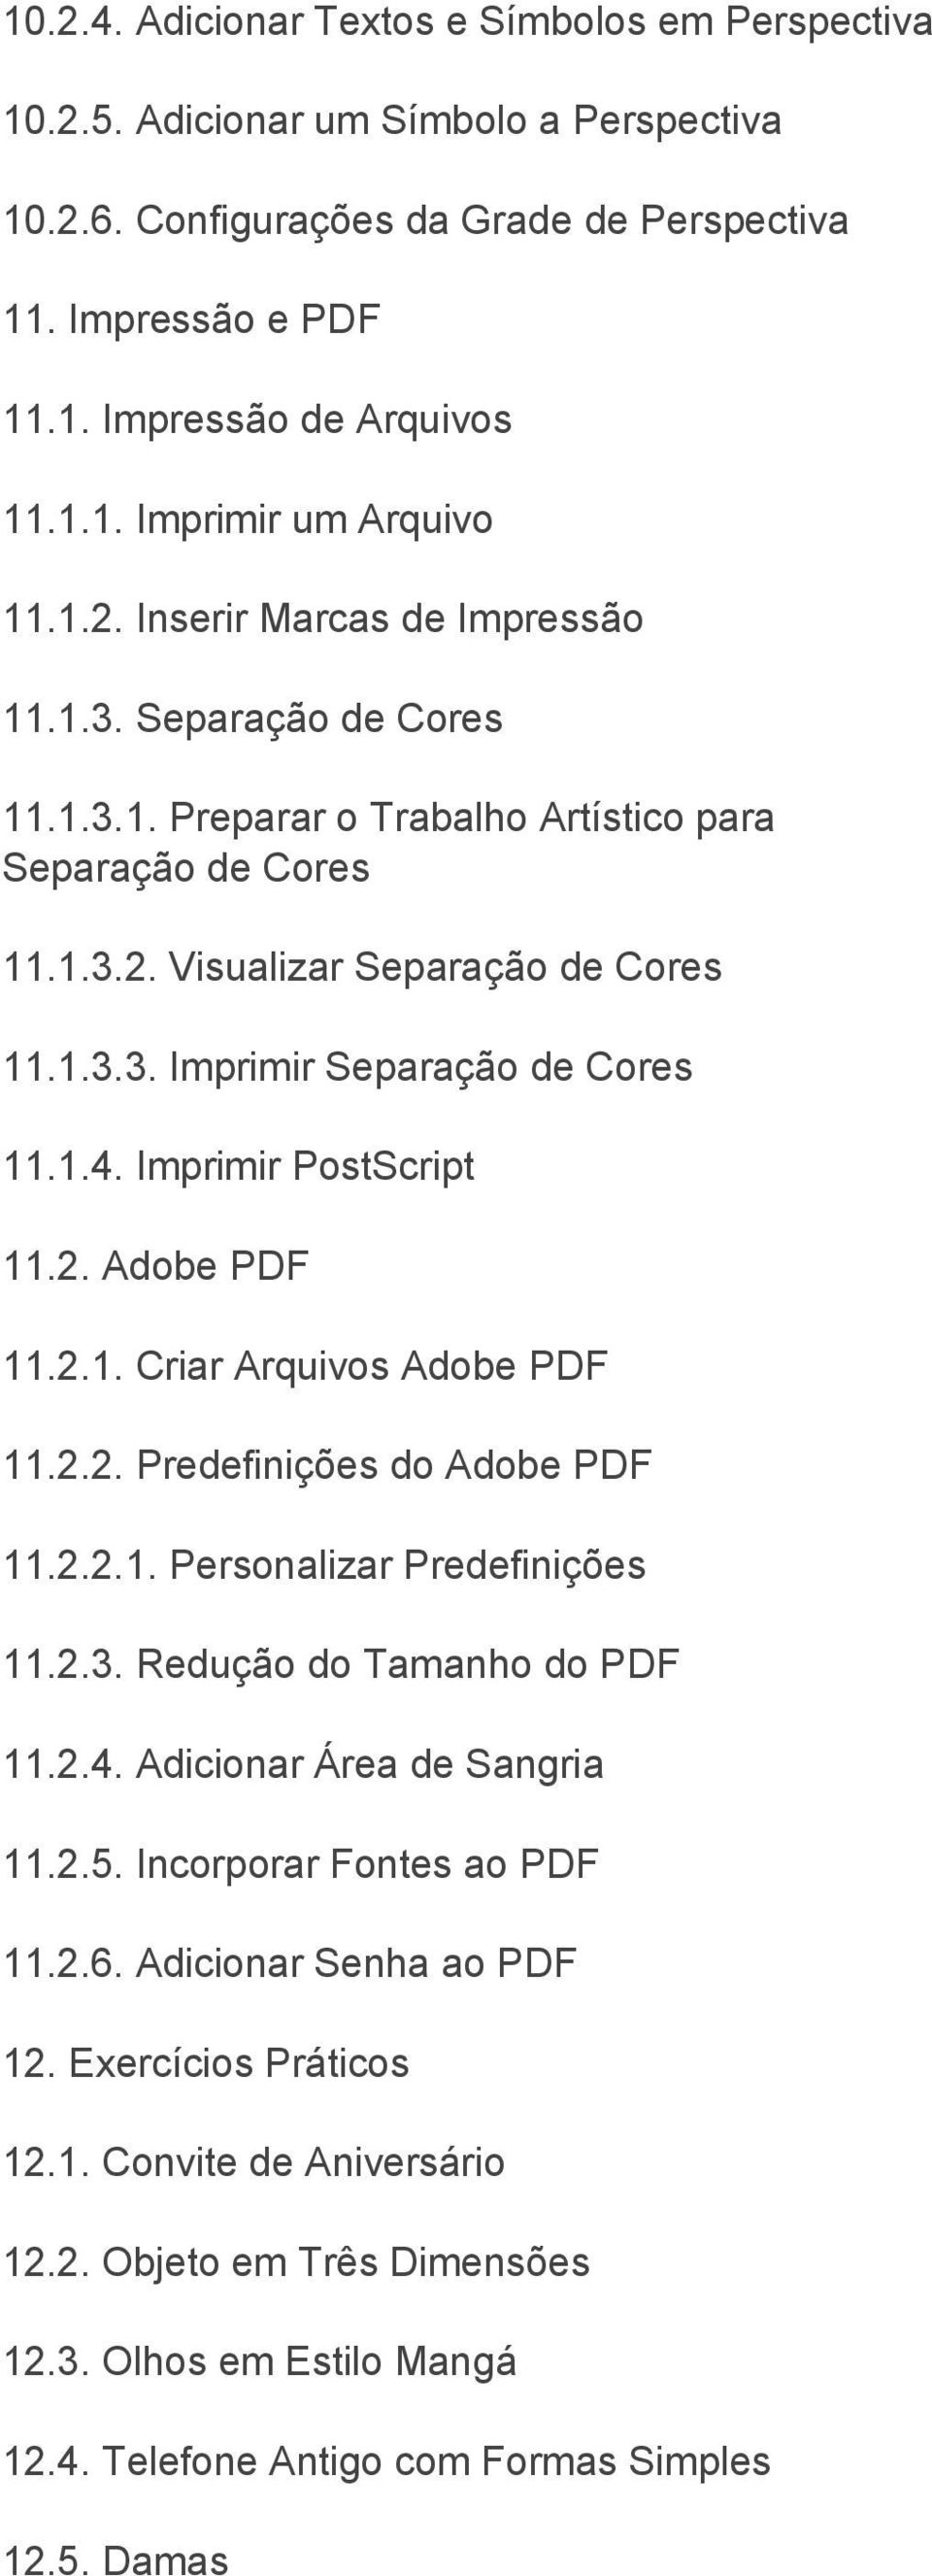 1.4. Imprimir PostScript 11.2. Adobe PDF 11.2.1. Criar Arquivos Adobe PDF 11.2.2. Predefinições do Adobe PDF 11.2.2.1. Personalizar Predefinições 11.2.3. Redução do Tamanho do PDF 11.2.4. Adicionar Área de Sangria 11.